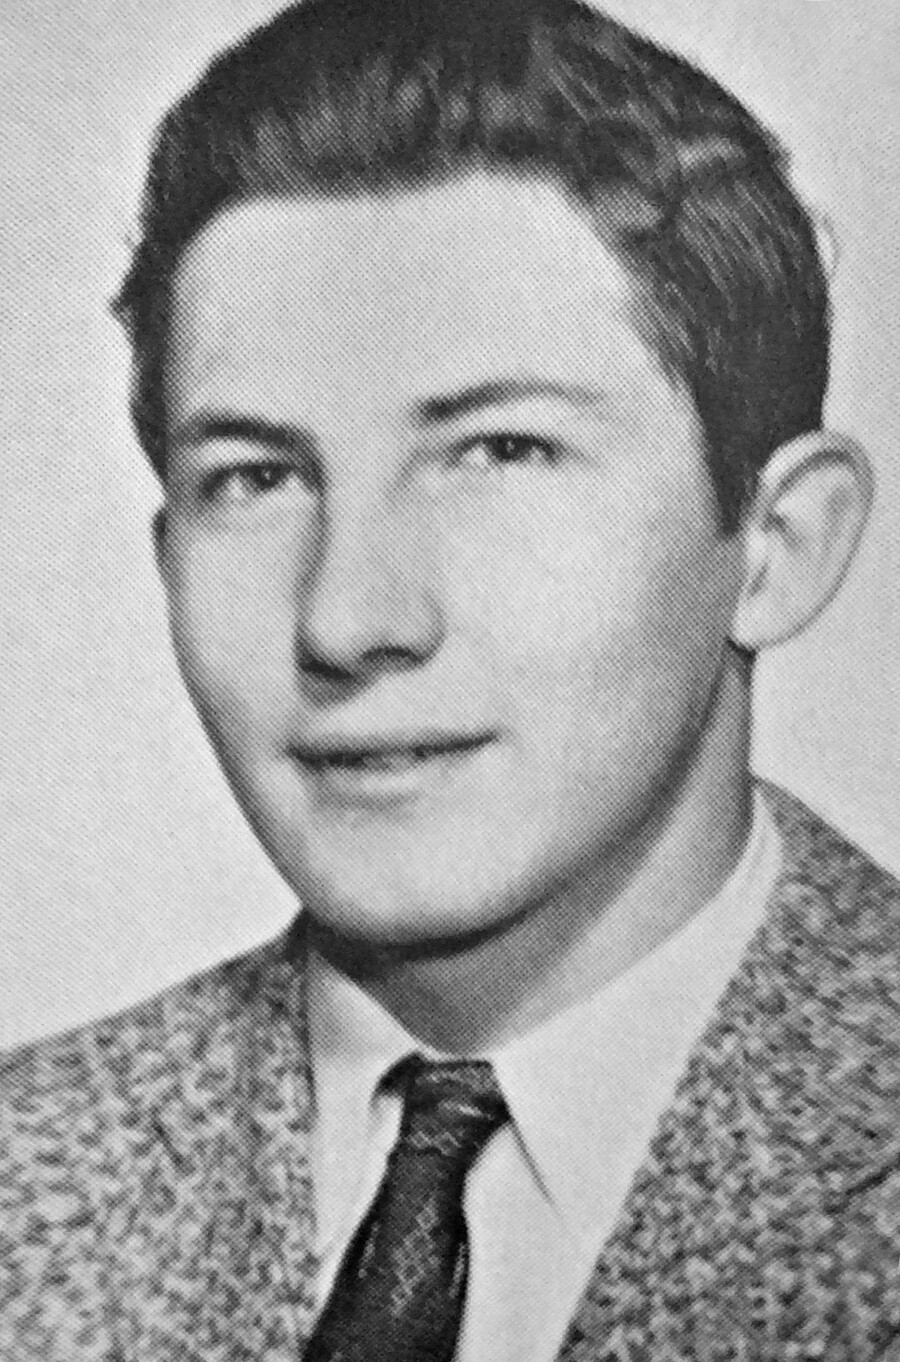 Mladi Aldrich Ames v šolskem albumu srednje šole McLean iz leta 1958